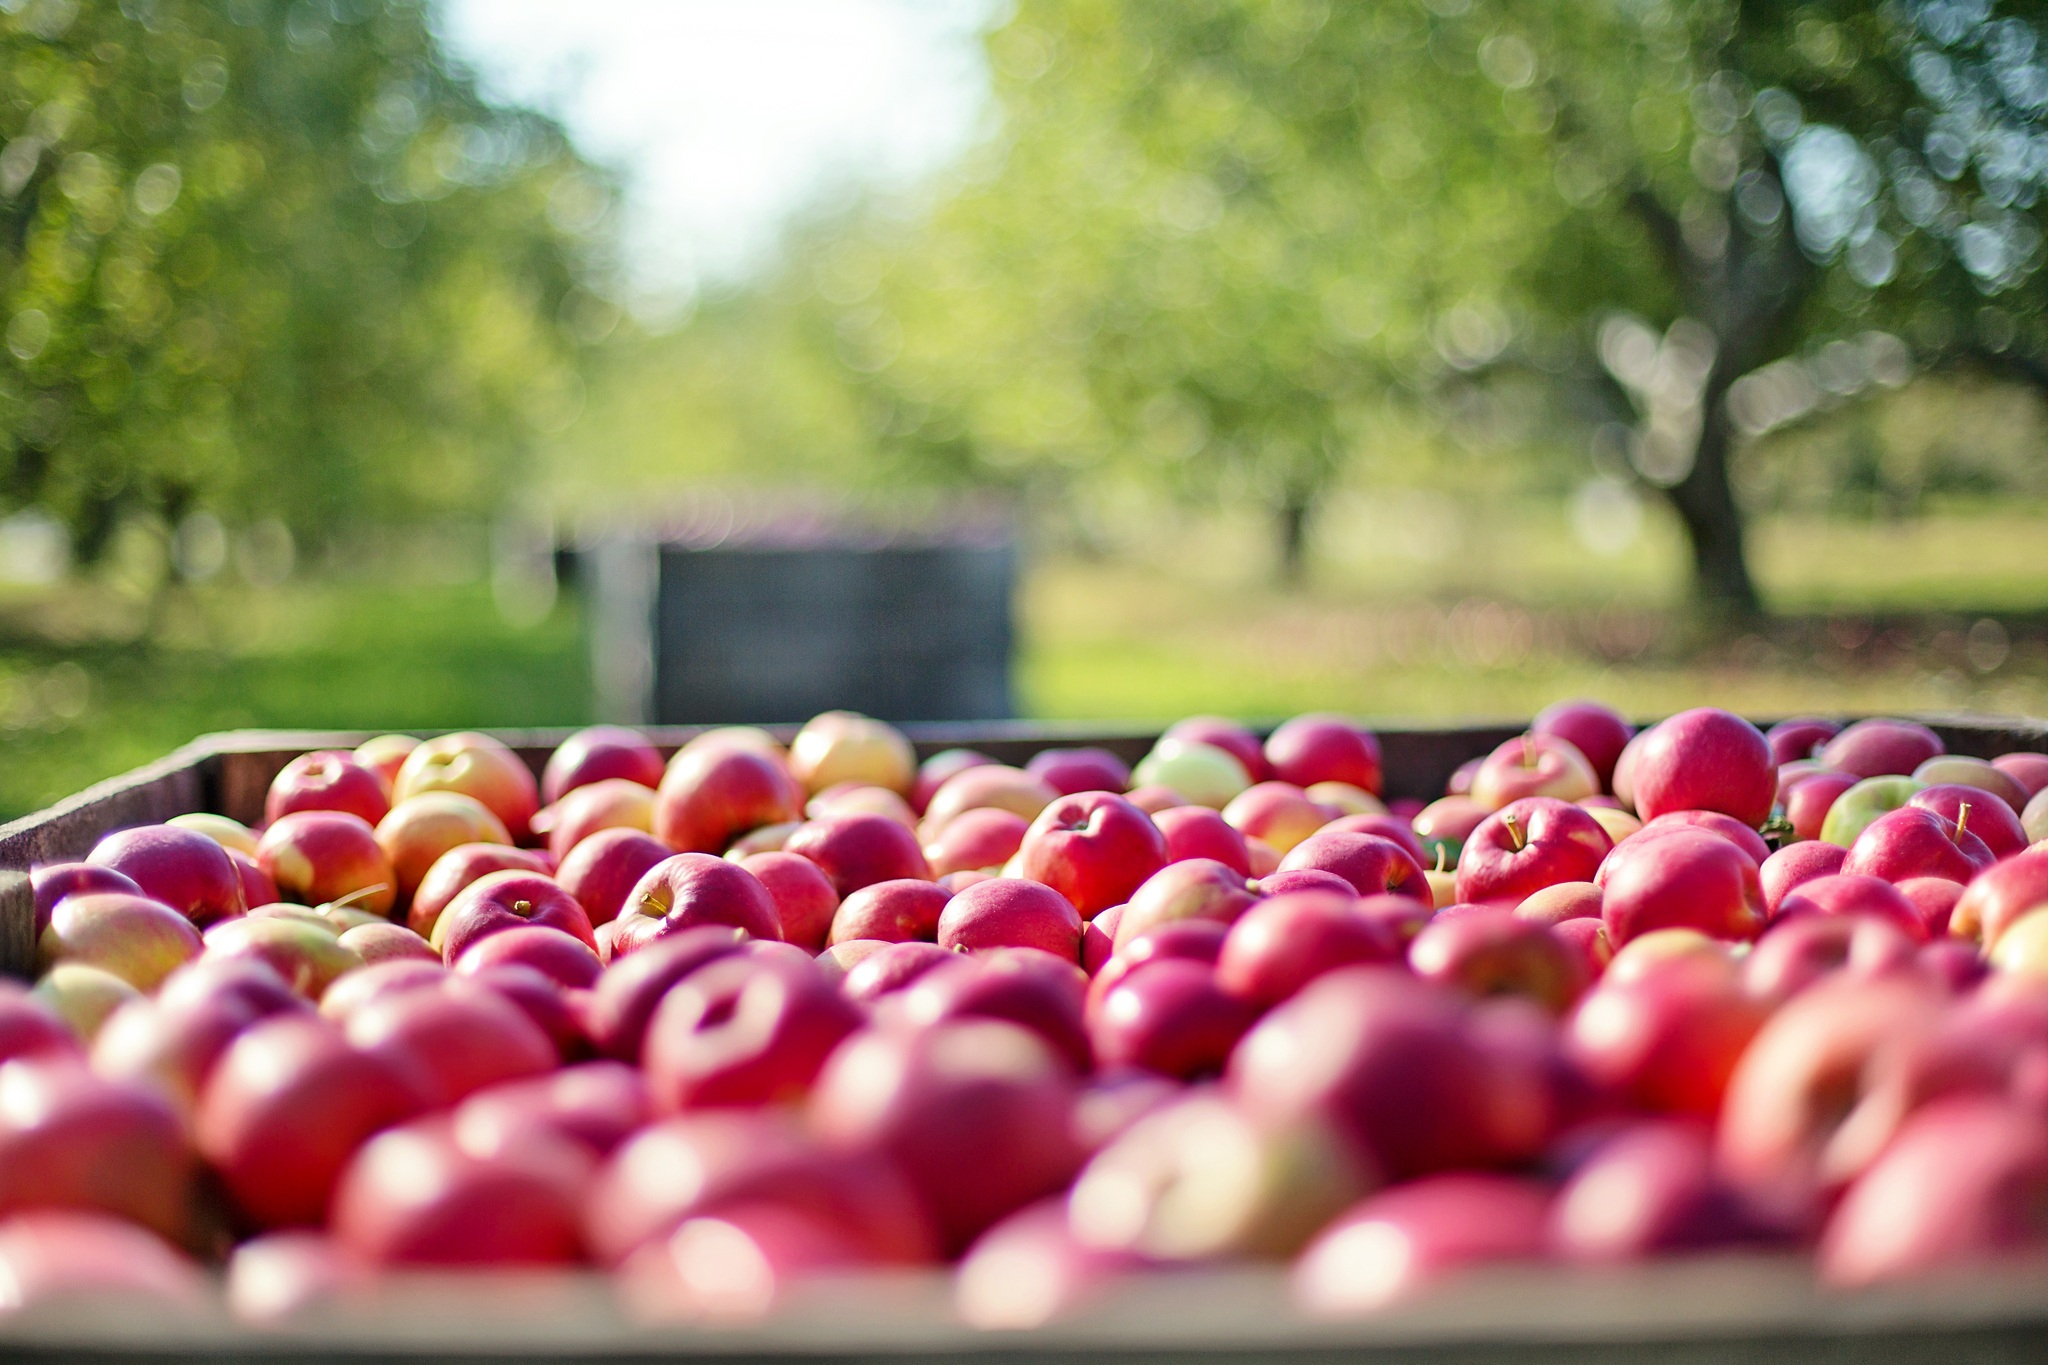 Польские садоводы пострадали из-за запрета на экспорт яблок в Россию